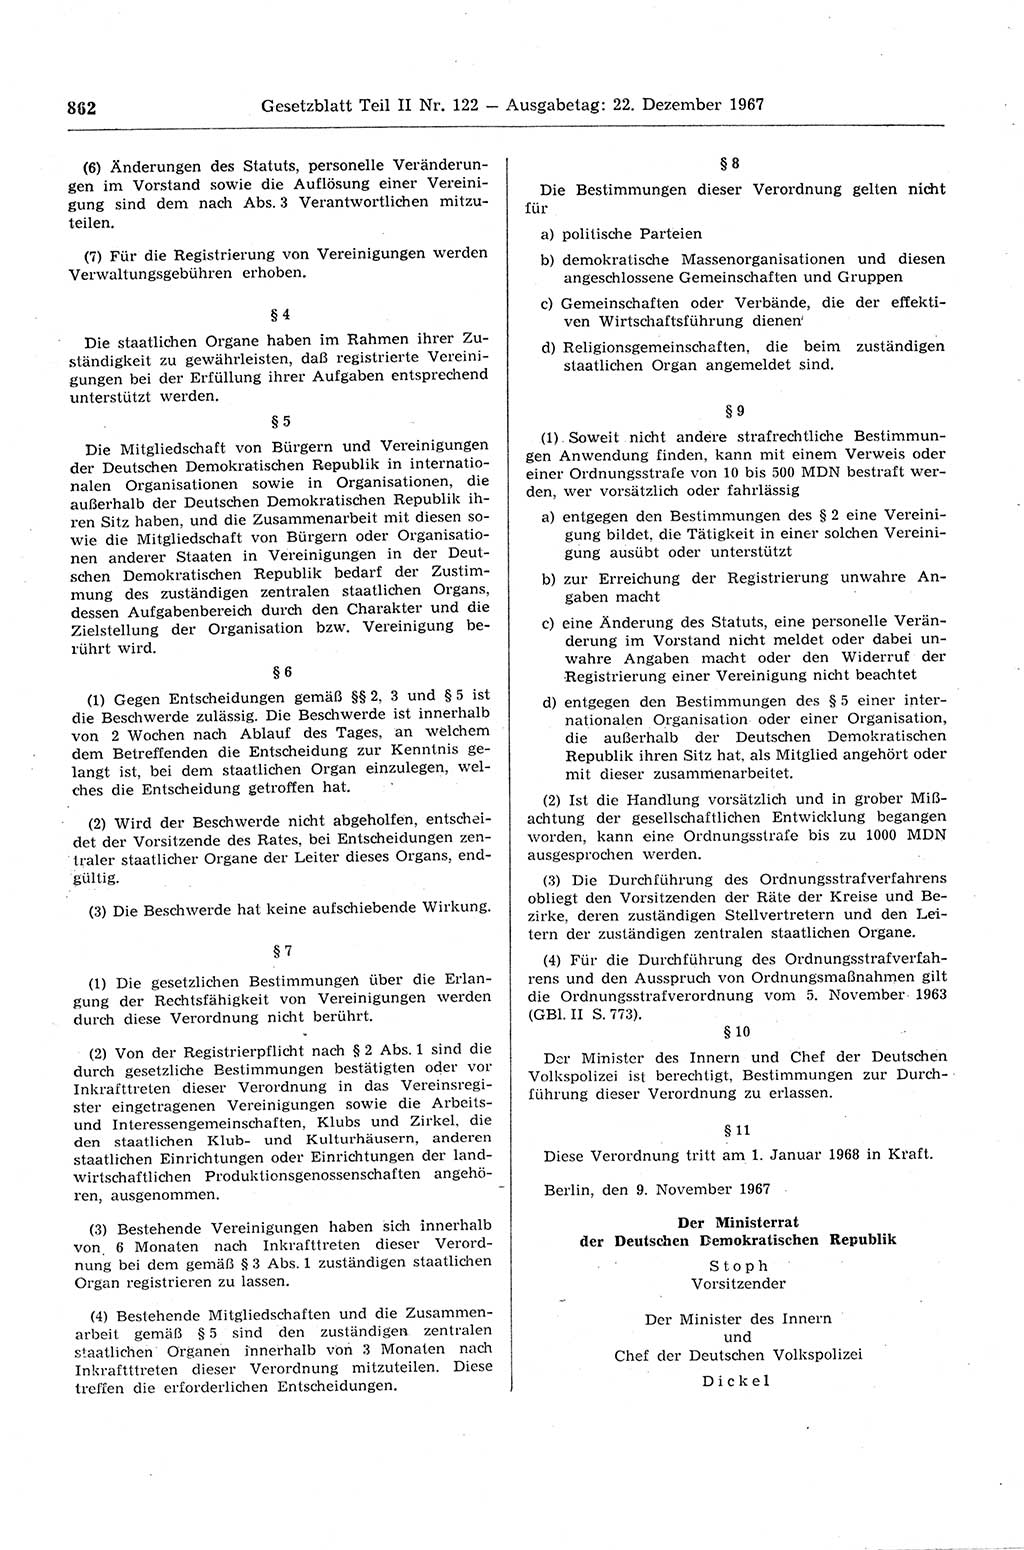 Gesetzblatt (GBl.) der Deutschen Demokratischen Republik (DDR) Teil ⅠⅠ 1967, Seite 862 (GBl. DDR ⅠⅠ 1967, S. 862)